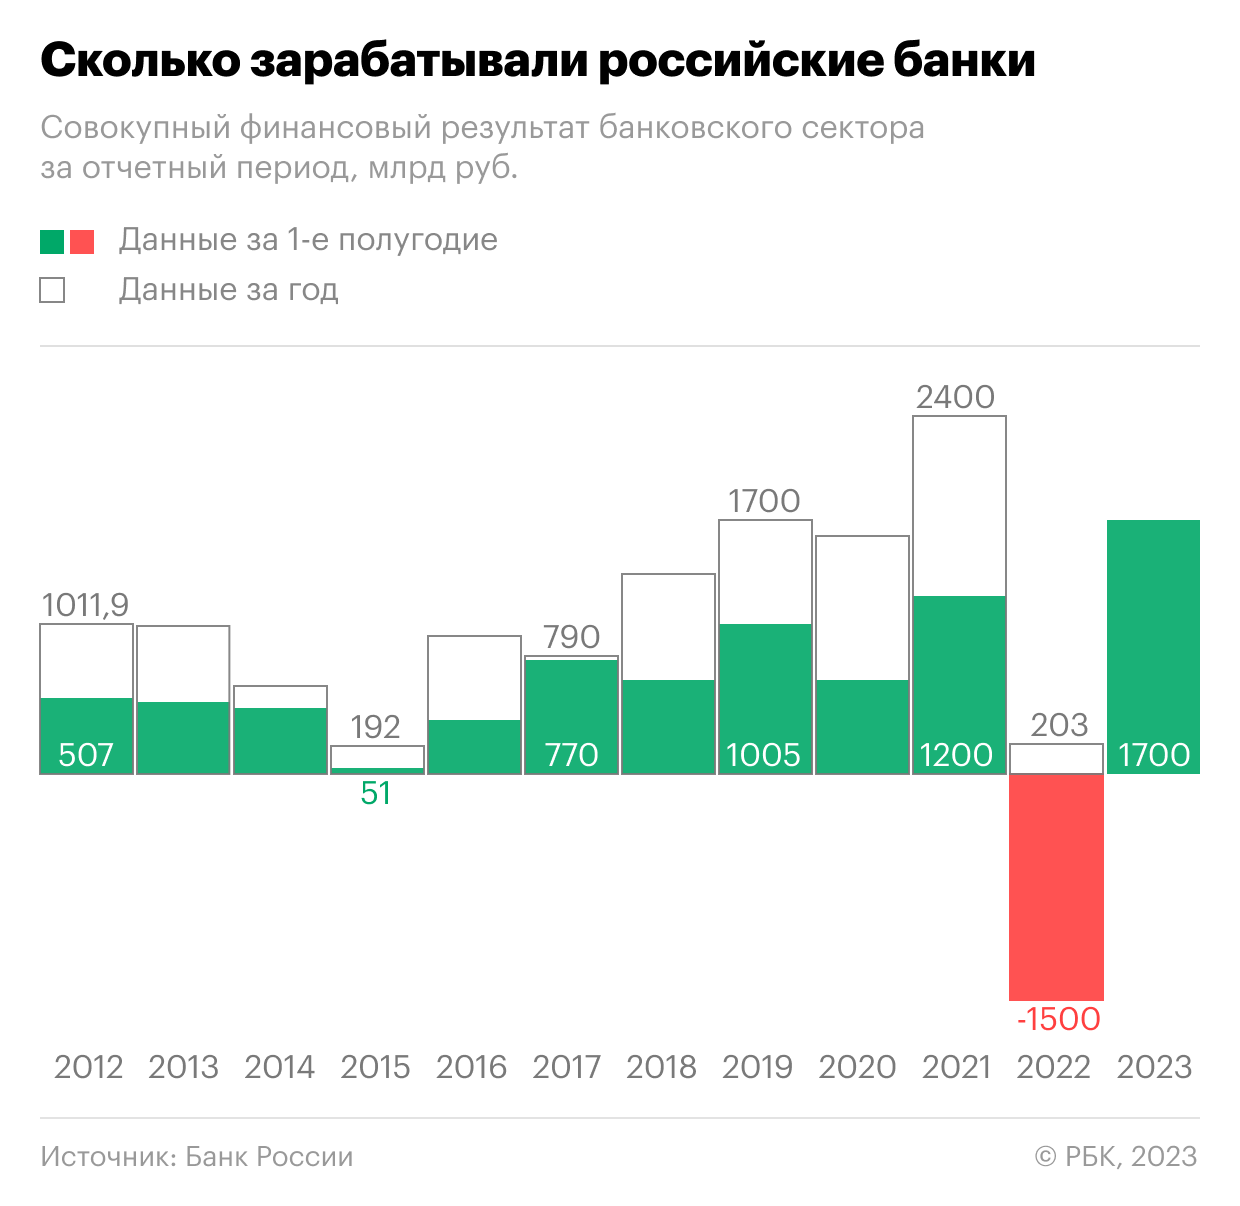 Как чистая прибыль банков в России резко упала, а потом побила рекорд